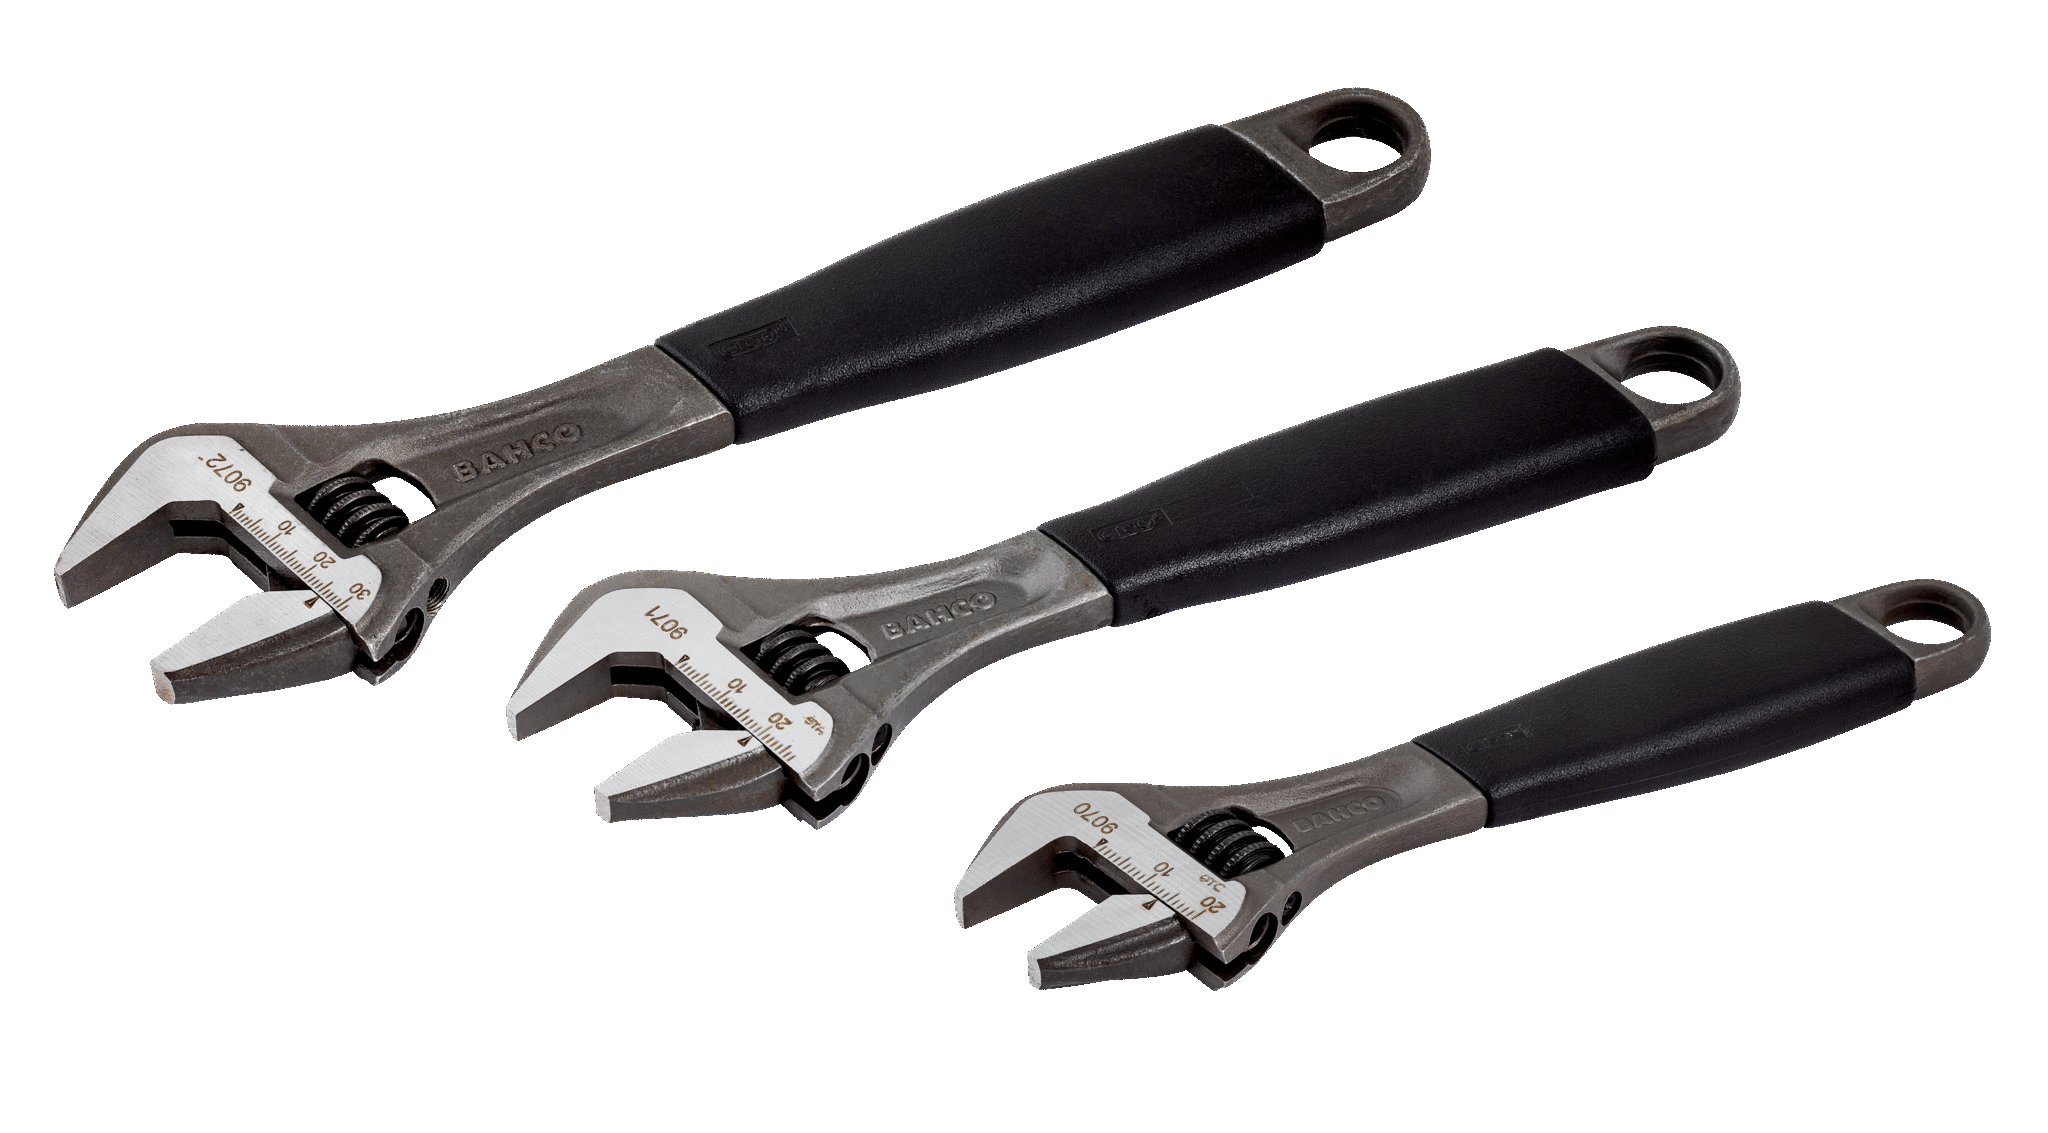 Adjustable wrench Adjustable wrench sets Adjustable wrench set Small adjustable wrench Adjustable wrenches Adjustable spanner wrenches Mini adjustable wrench Adjustable plier wrench Wrench sets 